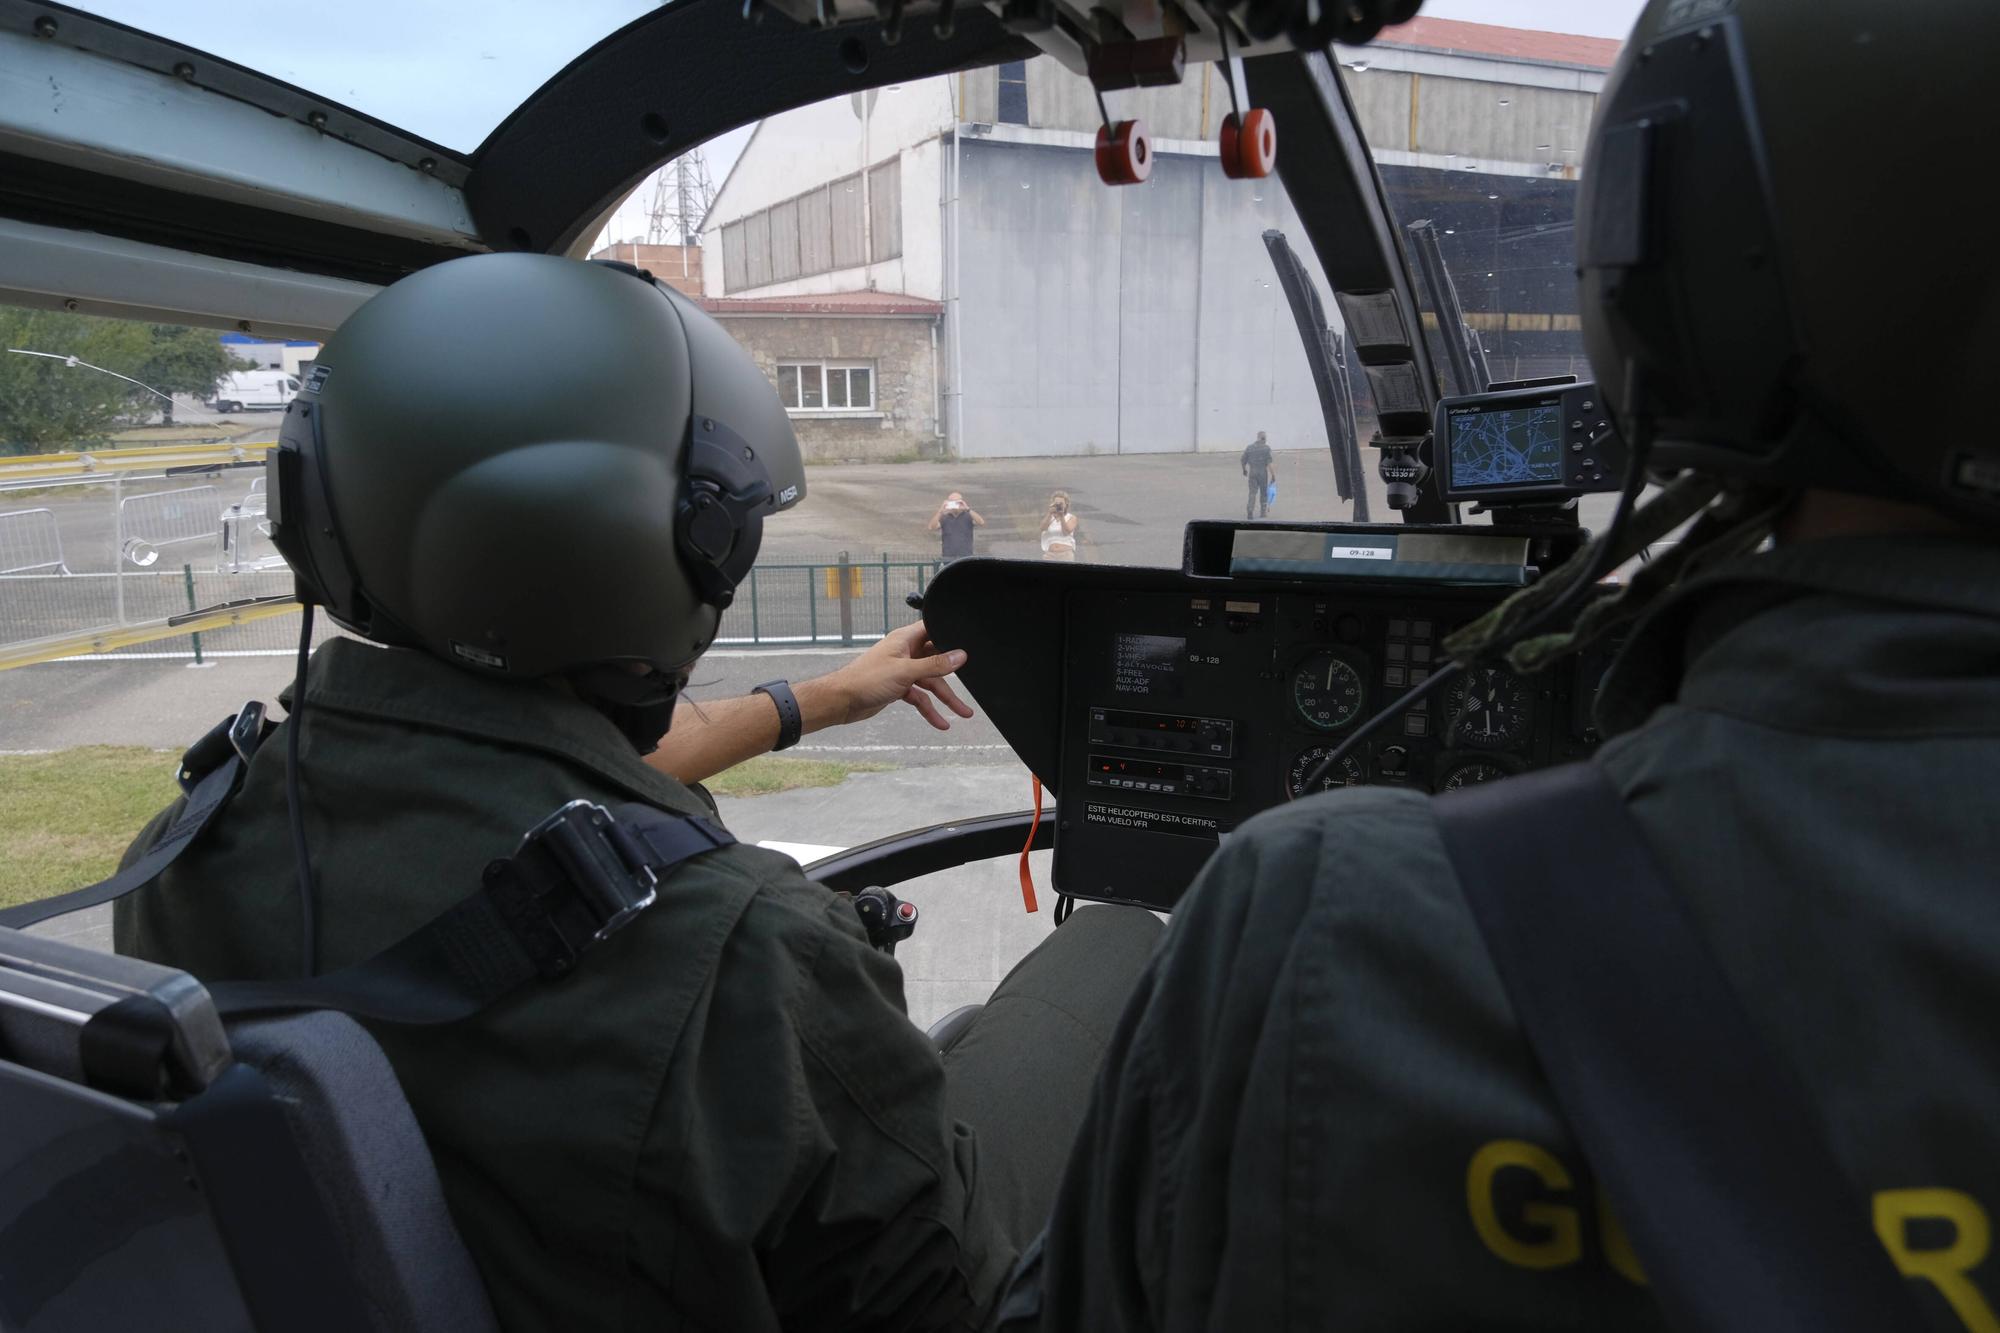 El servicio aéreo de la Guardia Civil cumple 50 años (en imágenes)